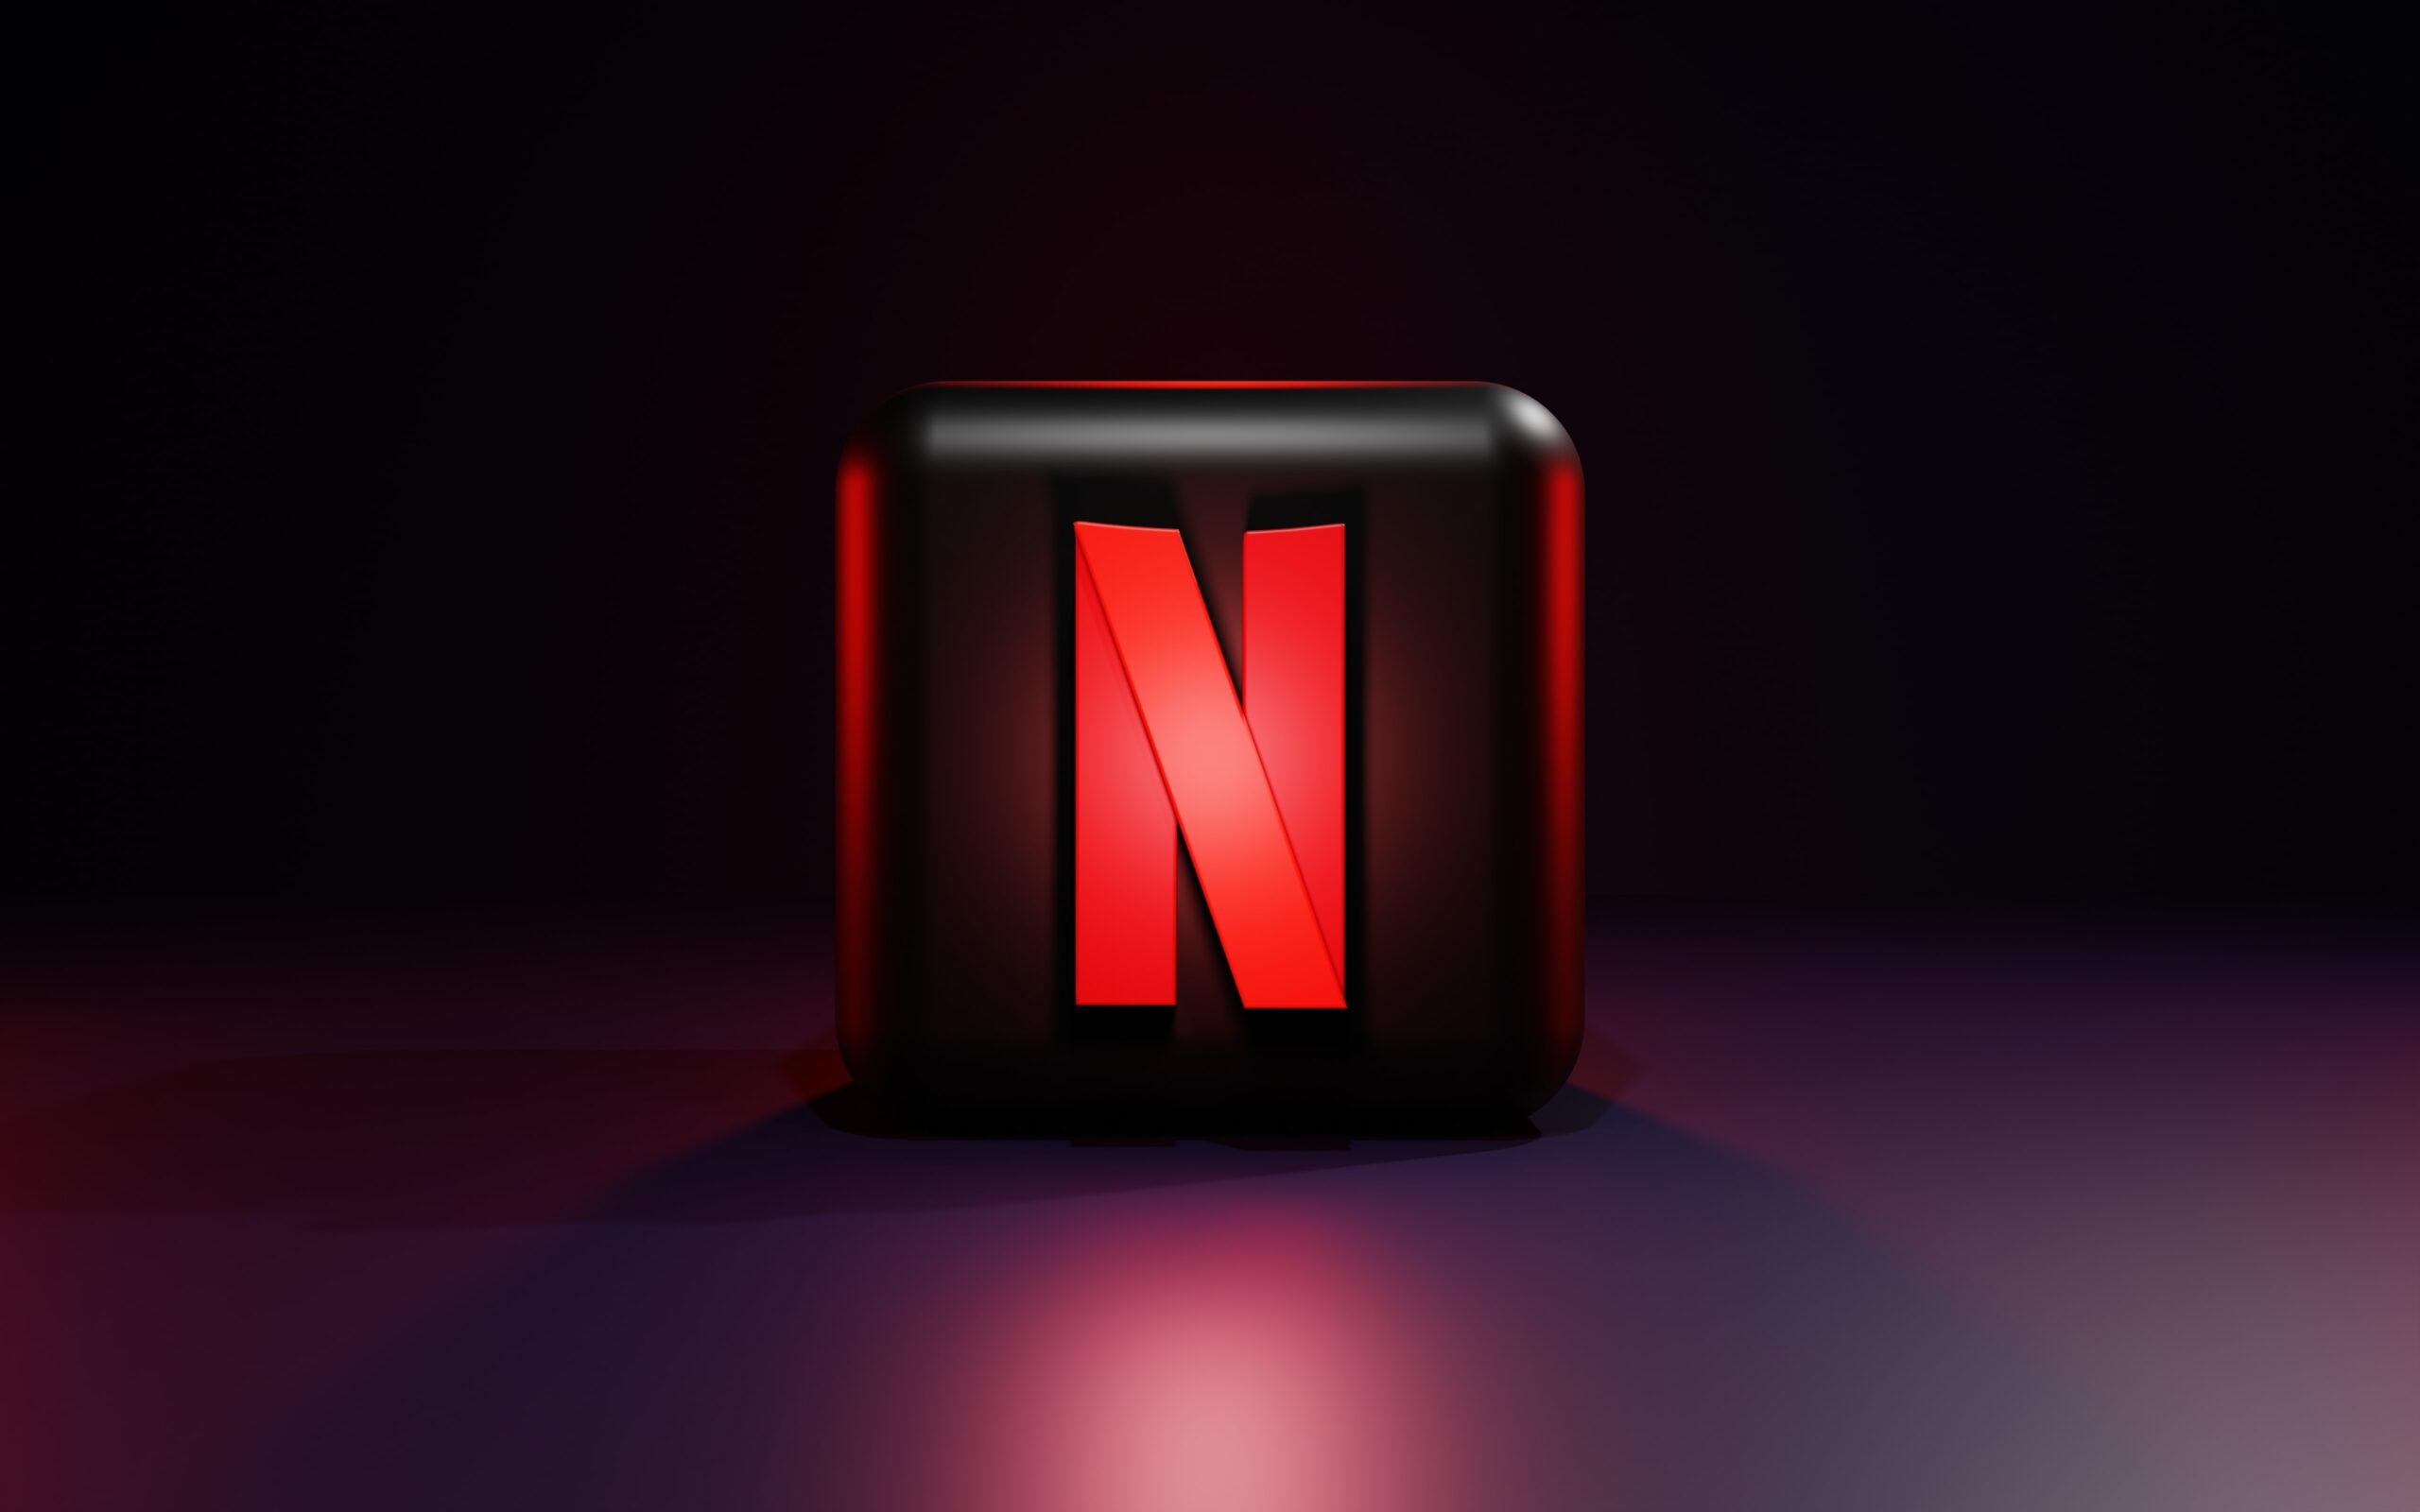 Netflix encerra plano básico, opção de assinatura sem anúncios, nos EUA e  Reino Unido - HojePR